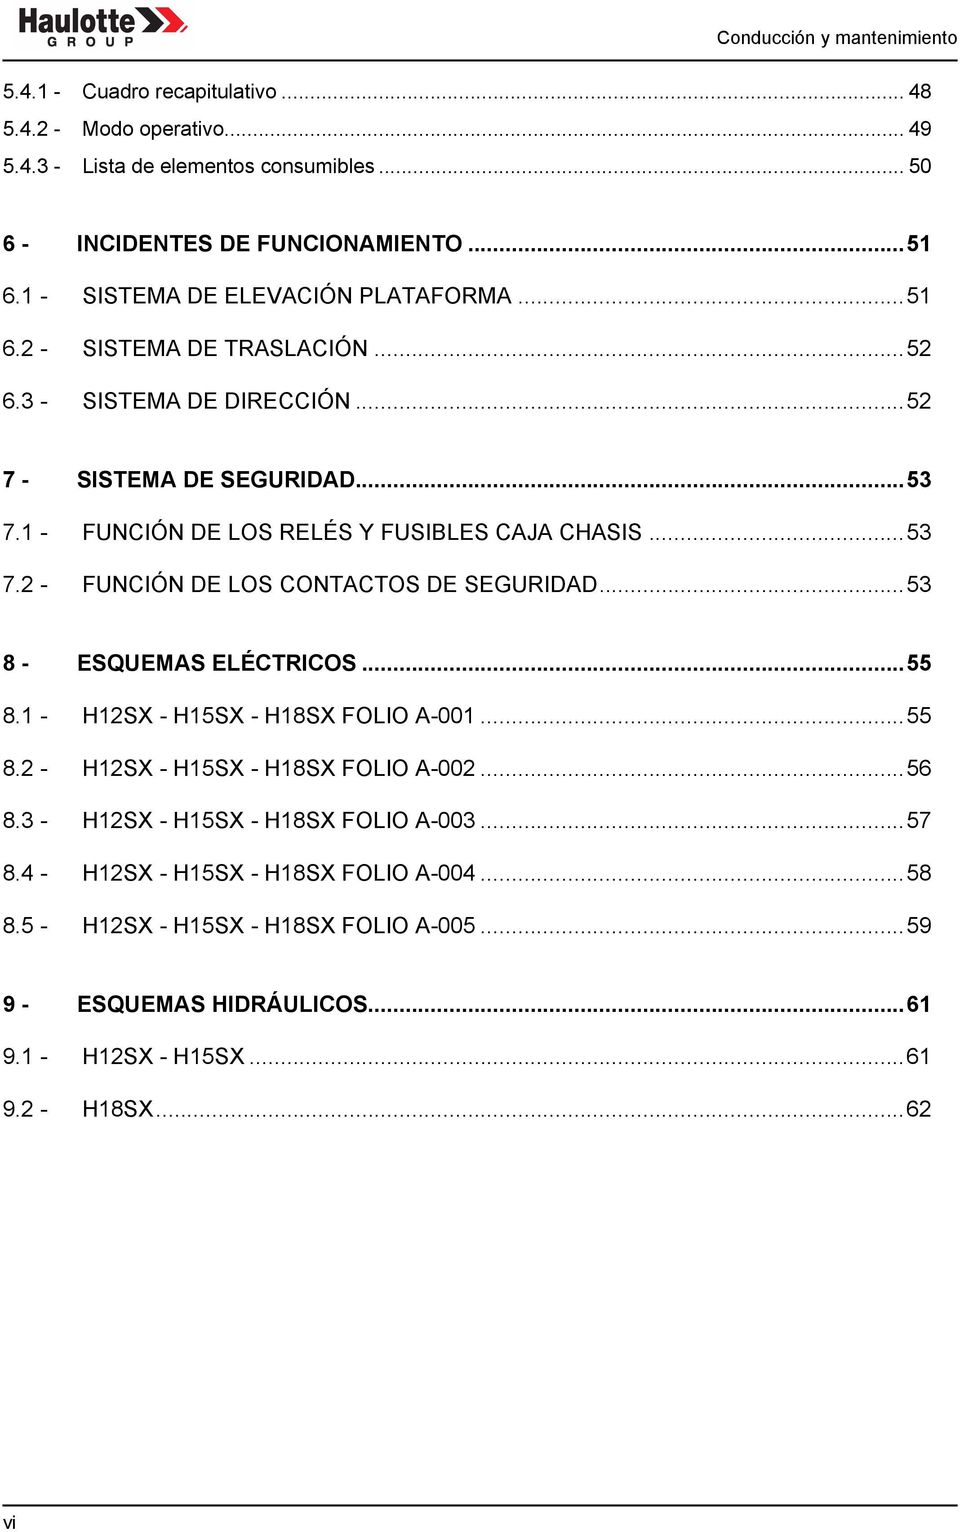 ..53 7.2 - FUNCIÓN DE LOS CONTACTOS DE SEGURIDAD...53 8 - ESQUEMAS ELÉCTRICOS...55 8.1 - H12SX - H15SX - H18SX FOLIO A-001...55 8.2 - H12SX - H15SX - H18SX FOLIO A-002...56 8.